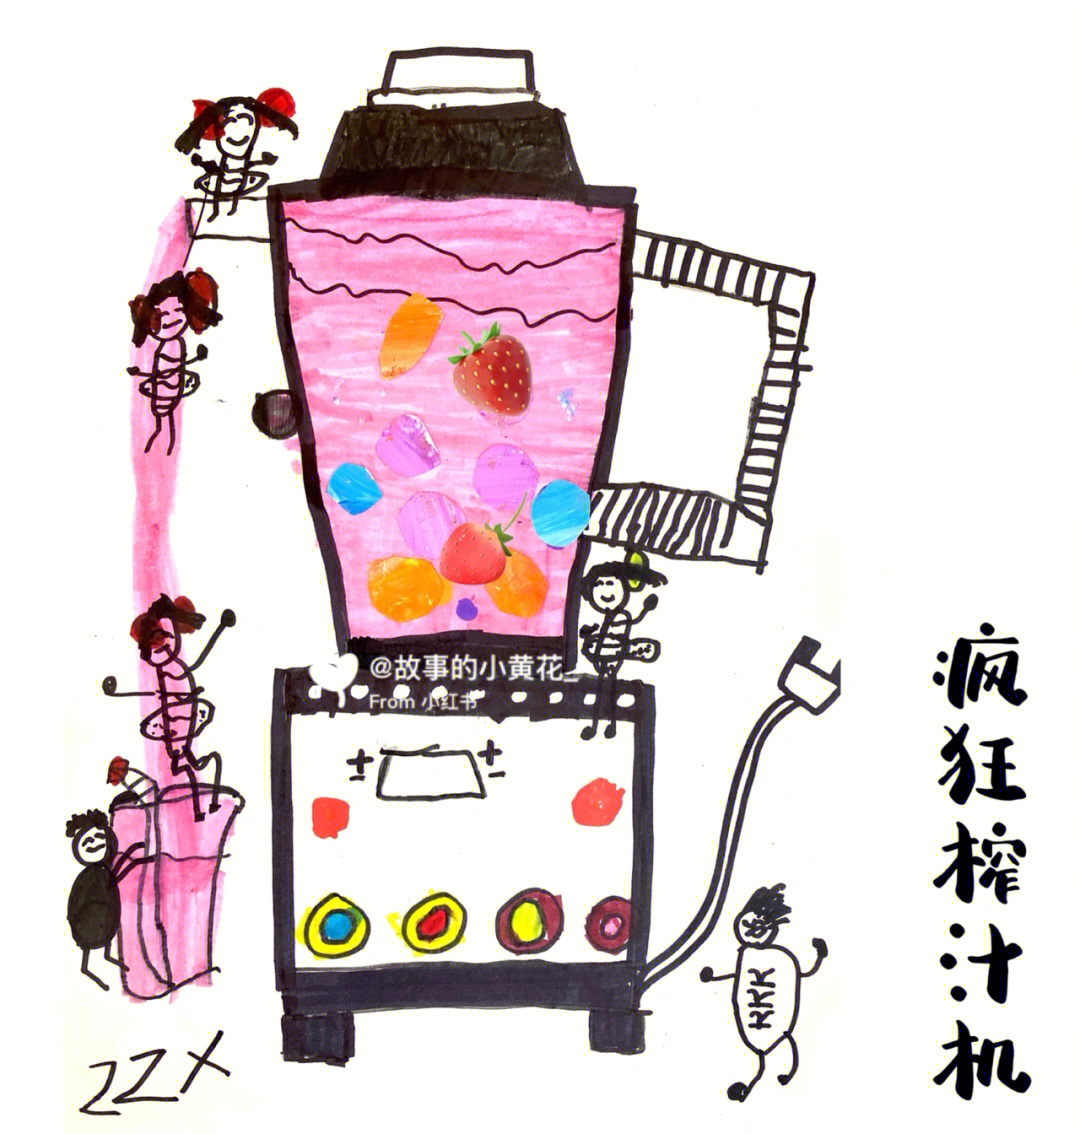 91仔细观察榨汁机,了解各种榨汁机的功能和结构特征,运用线描的绘画